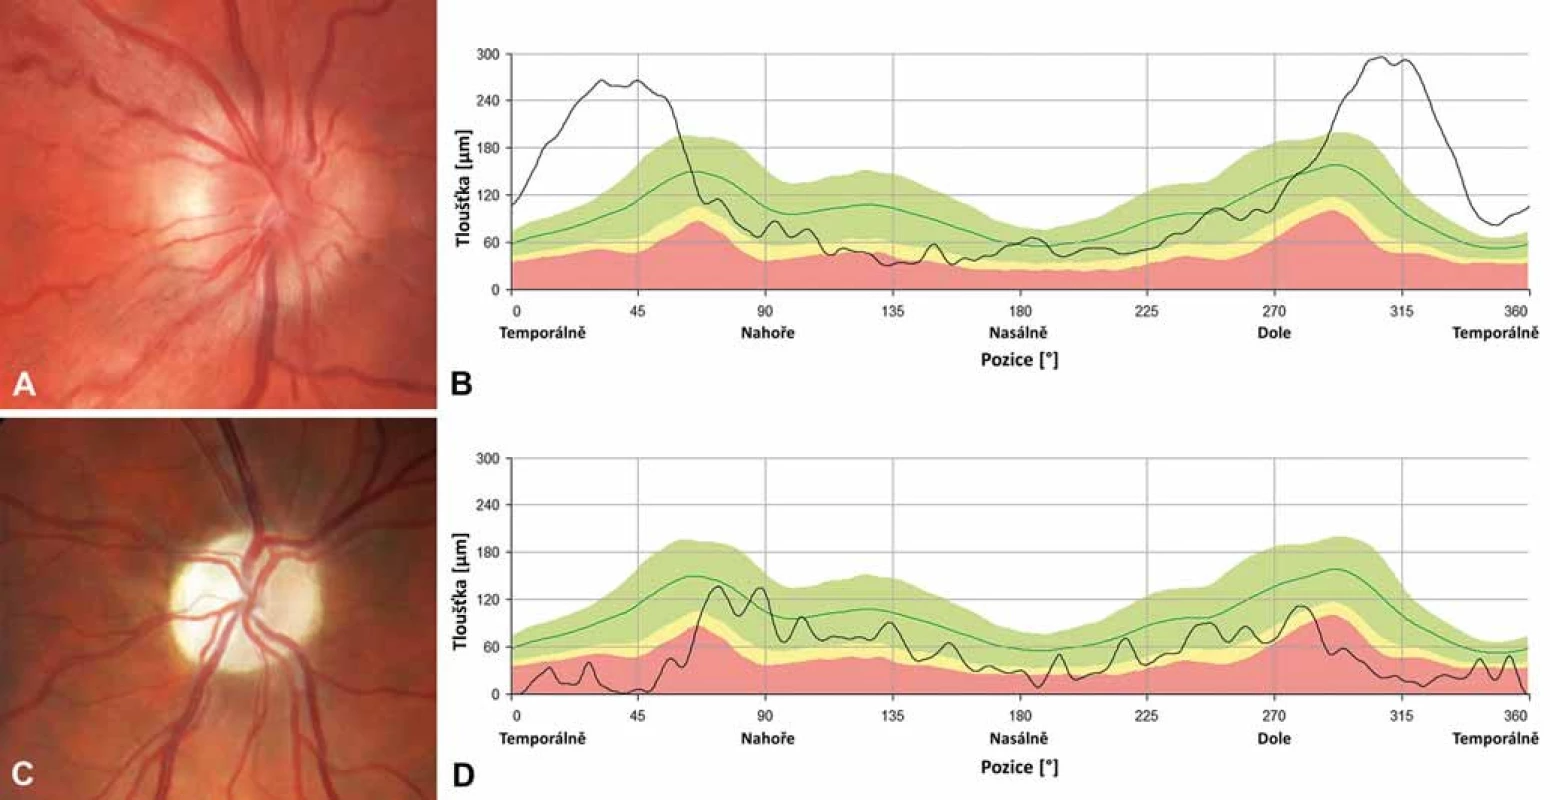 Nálezy na terčích zrakového nervu u dvou pacientů s LHON.
Barevná fotografie papily zrakového nervu pravého oka 20letého muže s m.11778G&gt;A mutací v době akutní fáze onemocnění, lze pozorovat pseudoedém a vinuté, rozšířené cévy při okraji (A); měření tloušťky vrstvy nervových vláken (RNFL) peripapilárně dokládá zvýšení nad normativní databázi (zelené pásmo) temporálně, zatímco nazálně a nahoře lze již detekovat počínající atrofii (žluté a červené pásmo) (B). Barevná fotografie papily zrakového nervu pravého oka 26letého muže s m.11778G&gt;A 6 let po manifestaci onemocnění, terč je výrazně bledý, což odpovídá těžké atrofii (C); měření RNFL dokládá úbytek této vrstvy, hodnoty jsou převážně patologické nebo hraniční (červené a žluté pásmo), dále dochází ke ztrátě charakteristické dvojitě vlnité kontury křivky (zelená linie) (D).
Fig. 3. Optic nerve heads findings in two patients with LHON.
Colour photograph of the right optic disc of a 20-year-old male with m.11778G&gt;A mutation in acute disease stage showing pseudoedema, telangiectasia and increased tortuosity of retinal vessels (A); peripapillary retinal nerve fibre layer measurements show increased thickness above the normative database (green band) temporally while in the nasal and superior quadrants there is already a RNFL thickness reduction (yellow and red band) (B). Colour photograph of the right optic nerve head of a 26-year-old male with m.11778G&gt;A mutation 6 years after the disease onset, the disc is pale corresponding to severe atrophy (C); RNFL measurements confirm thinning, most values are within the pathological or borderline range (red and yellow band), the typical normal pattern of RNFL striations is absent (green line) (D).